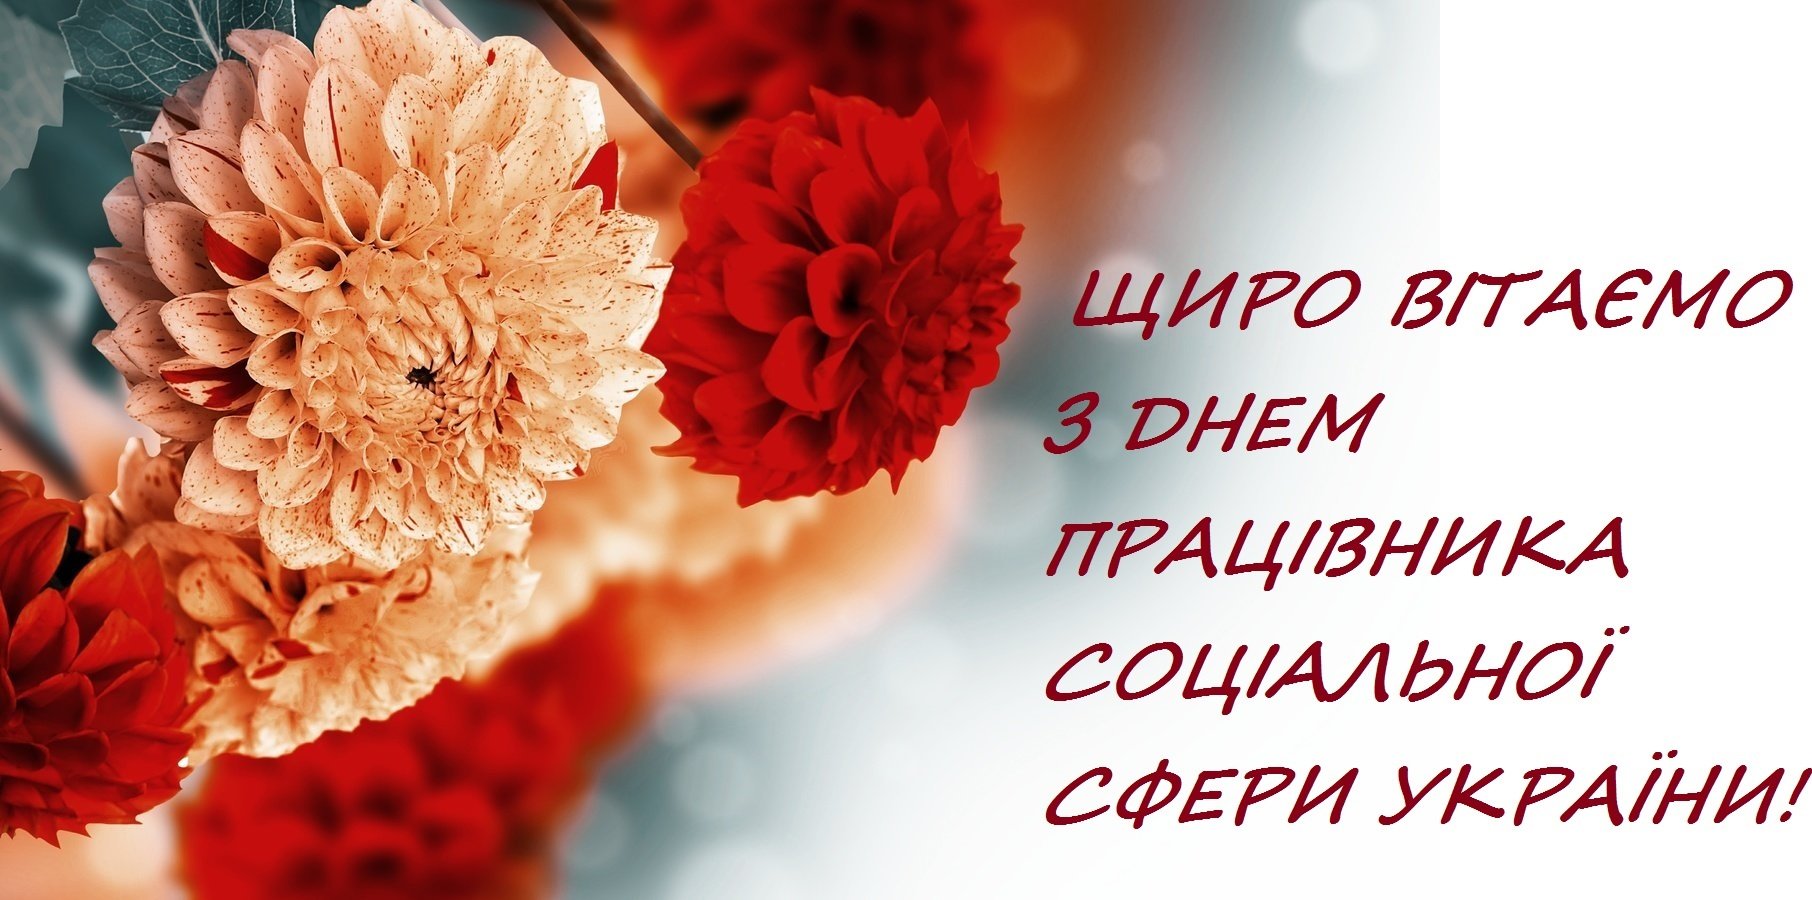 Наилучшие поздравления в День работника социальной сферы Украины!